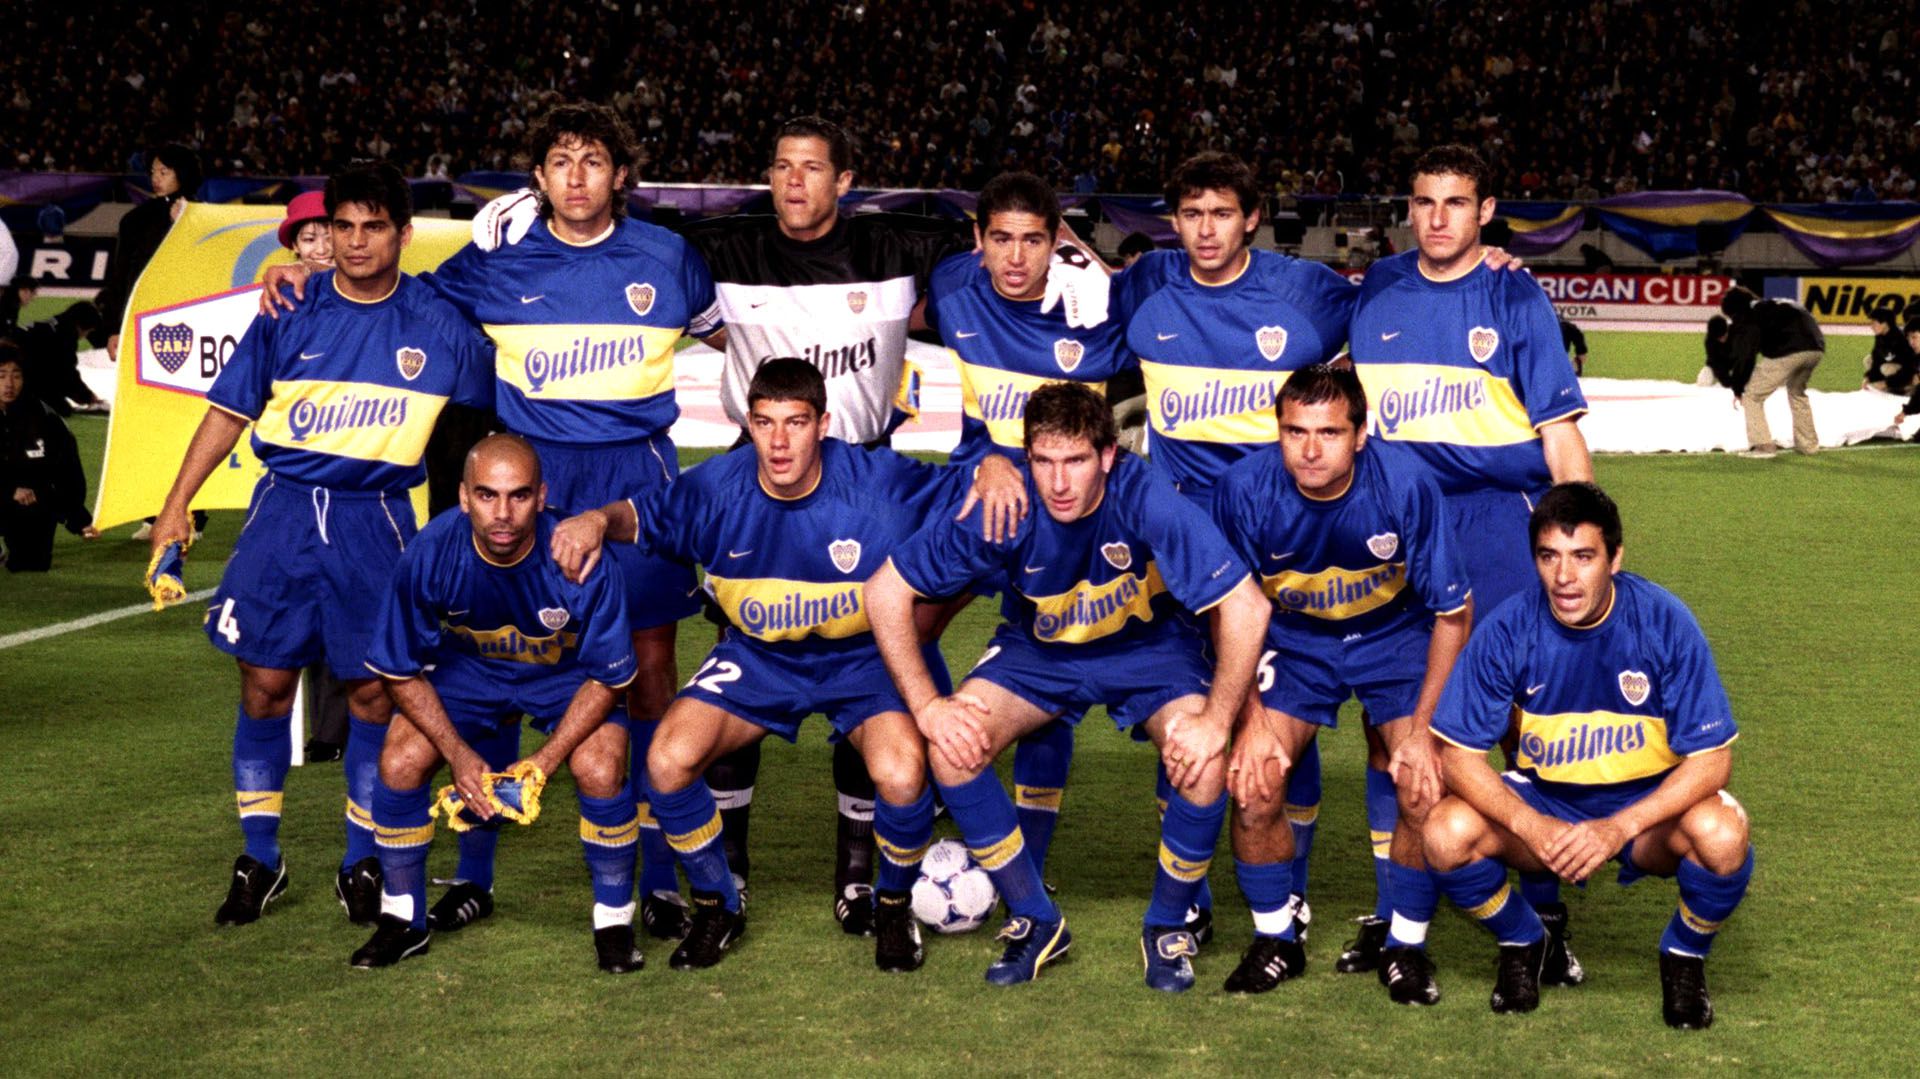 Dieron a conocer imágenes inéditas de la conquista de Boca en la  Intercontinental 2000 en Japón contra Real Madrid - Infobae